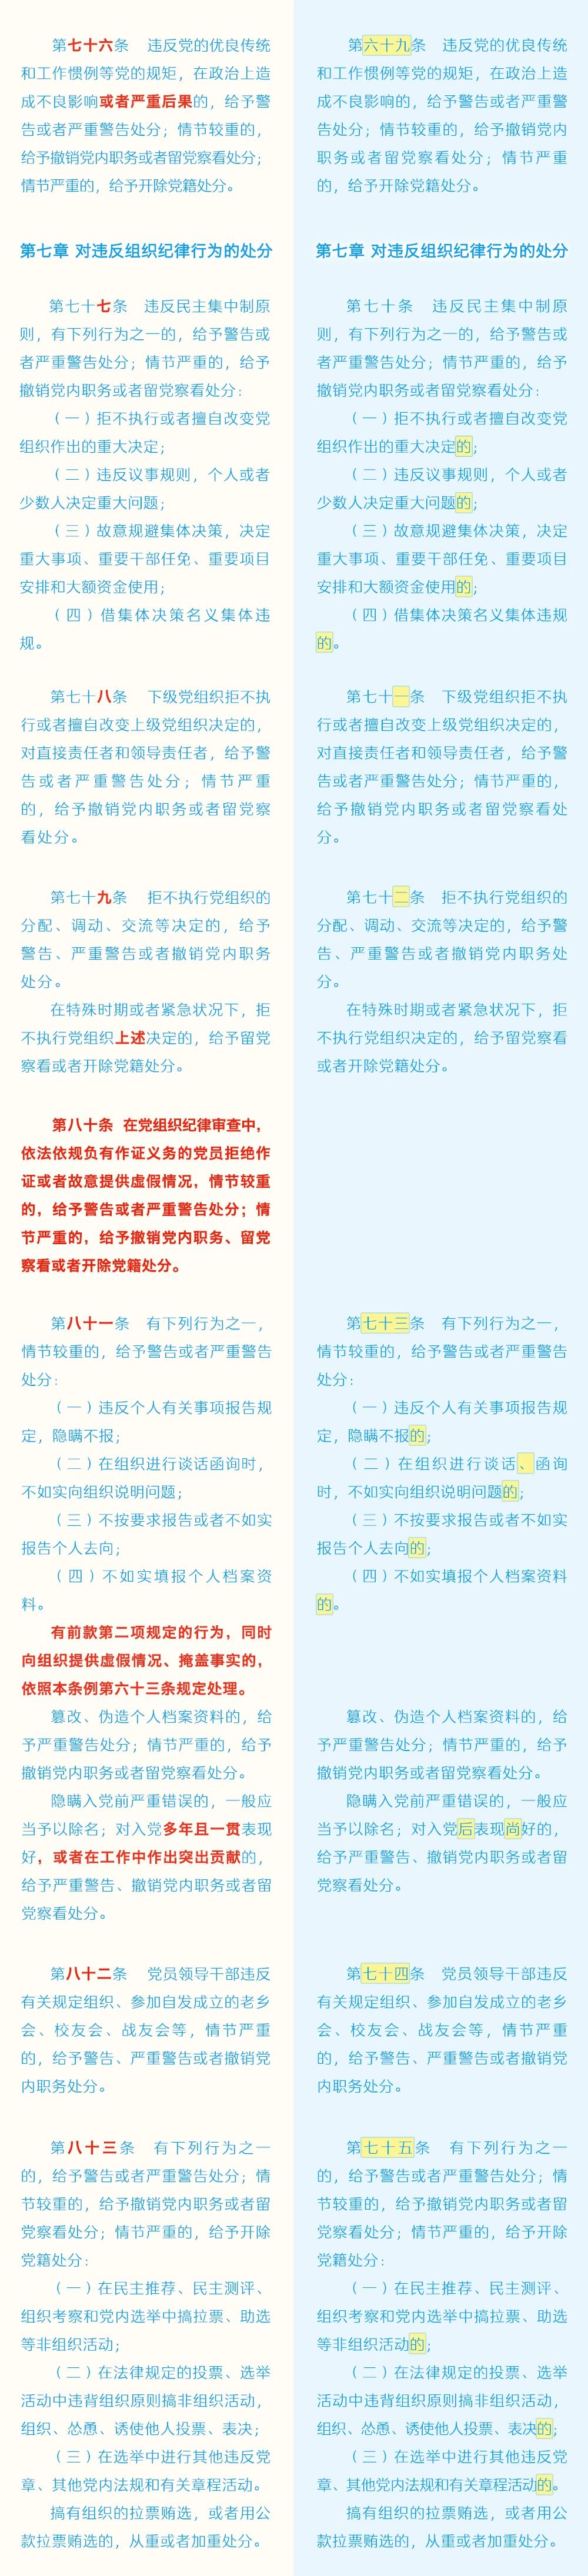 《中国共产党纪律处分条例》修订条文对照表12.jpg